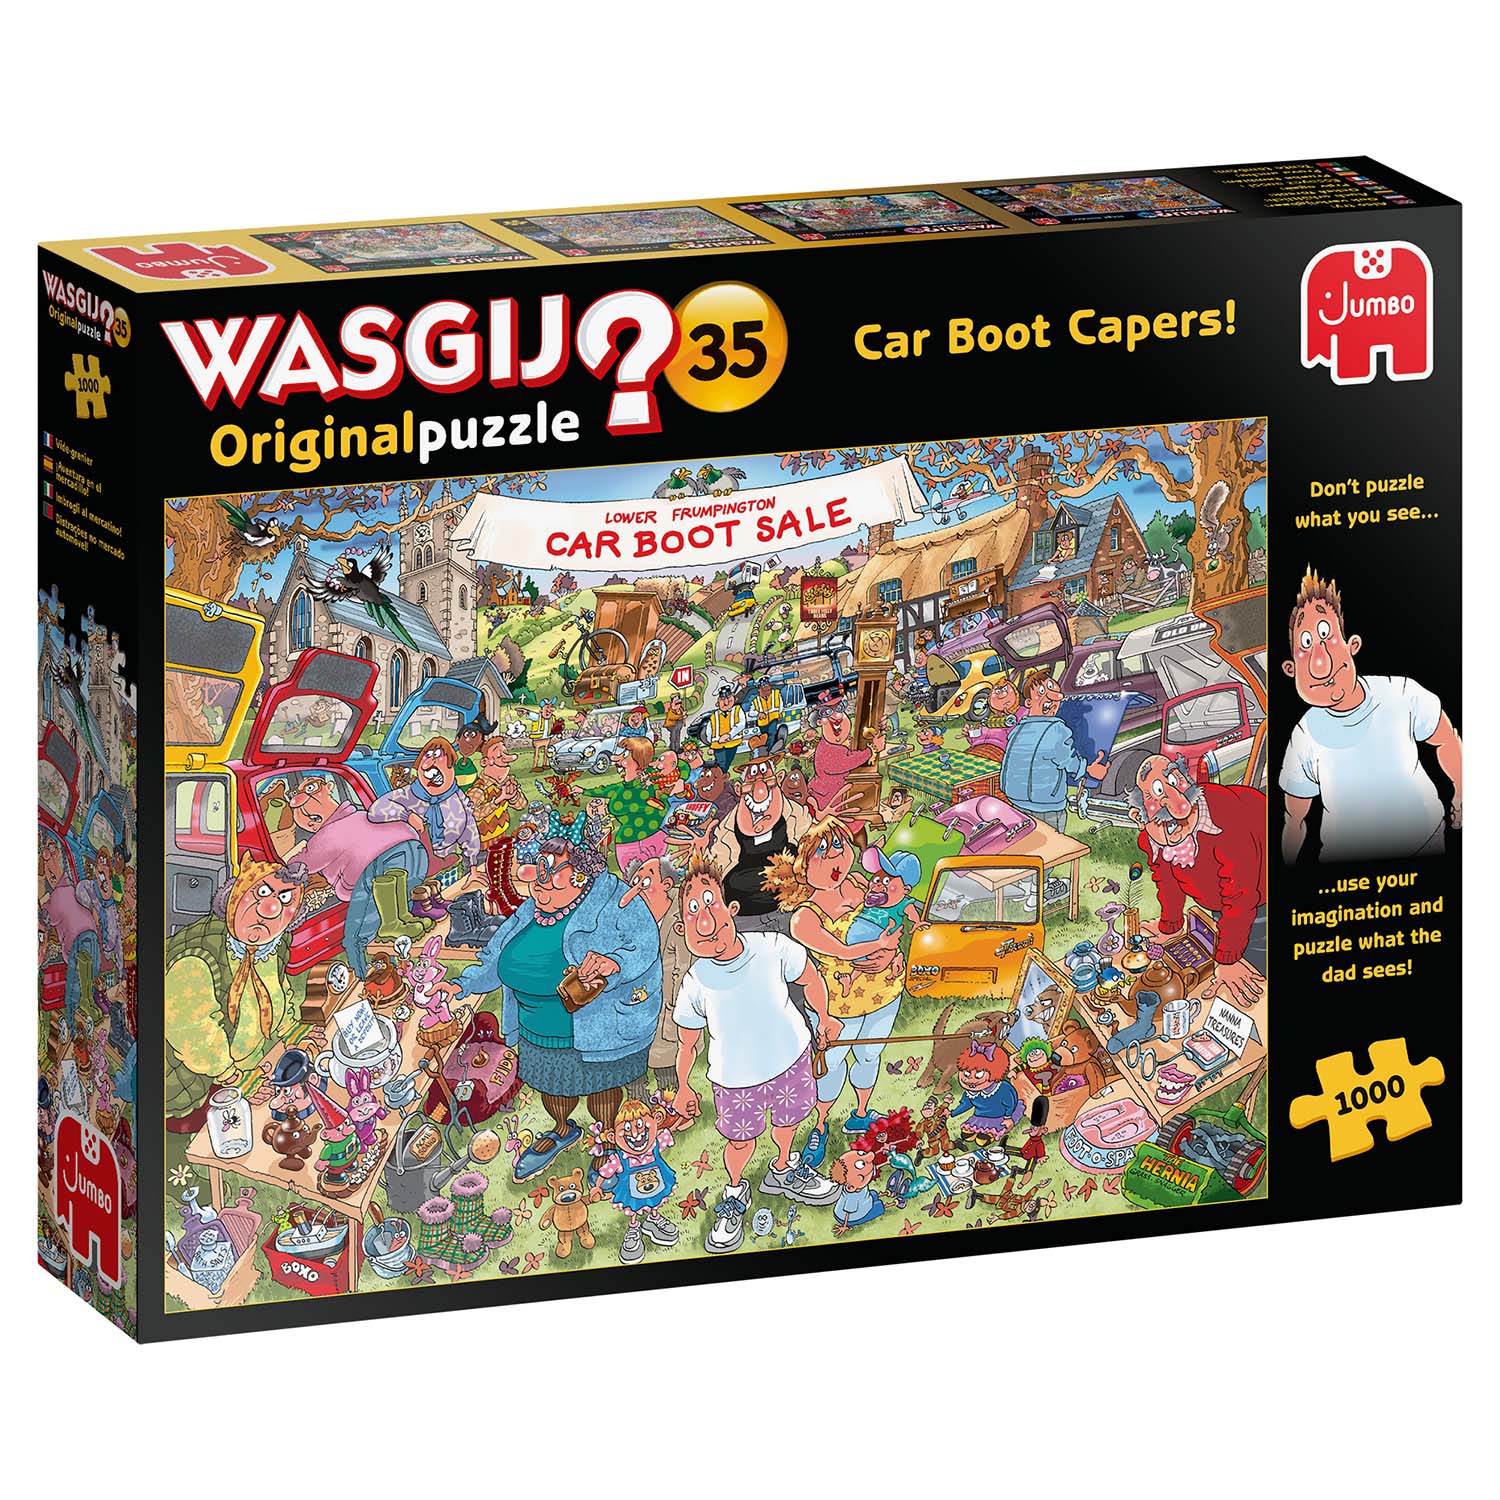 Wasgij Original 35: Car Boot Capers